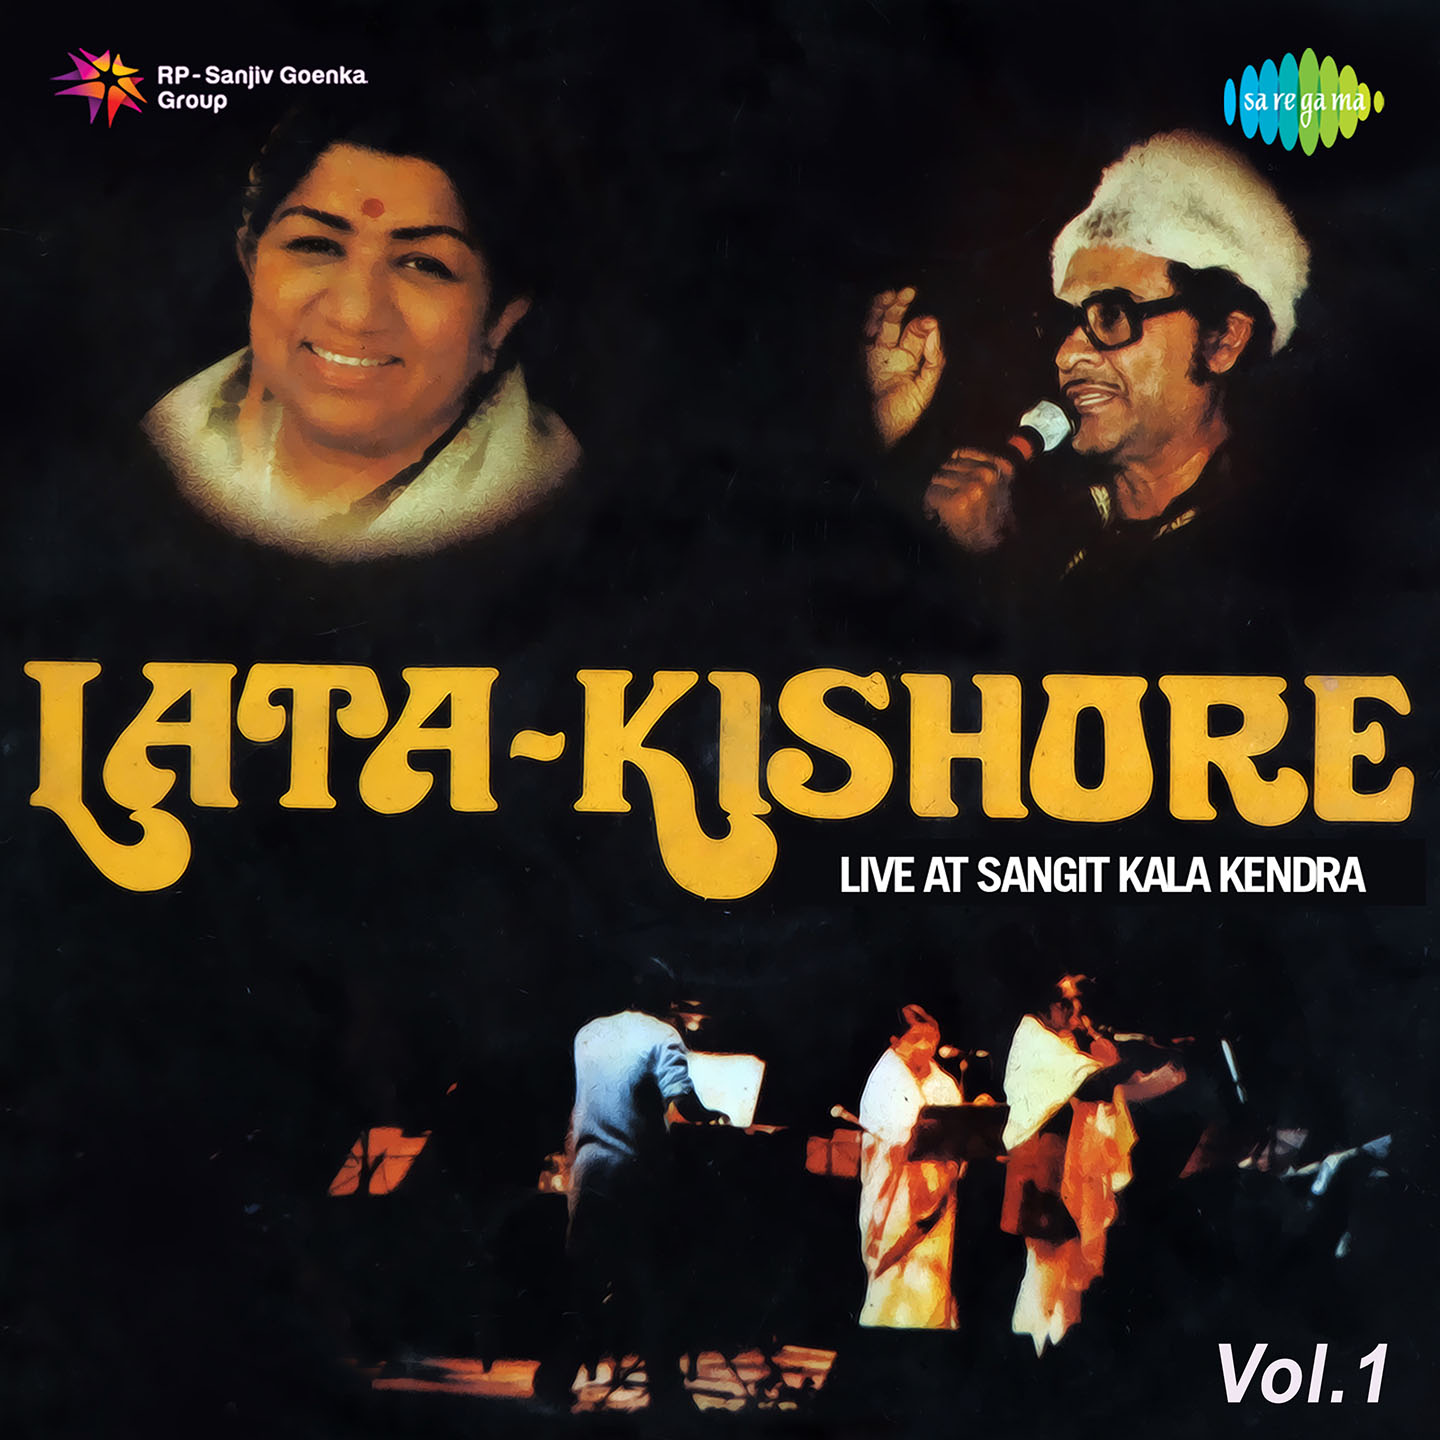 Kishore Live At Sangit Kala Kendra Vol.1